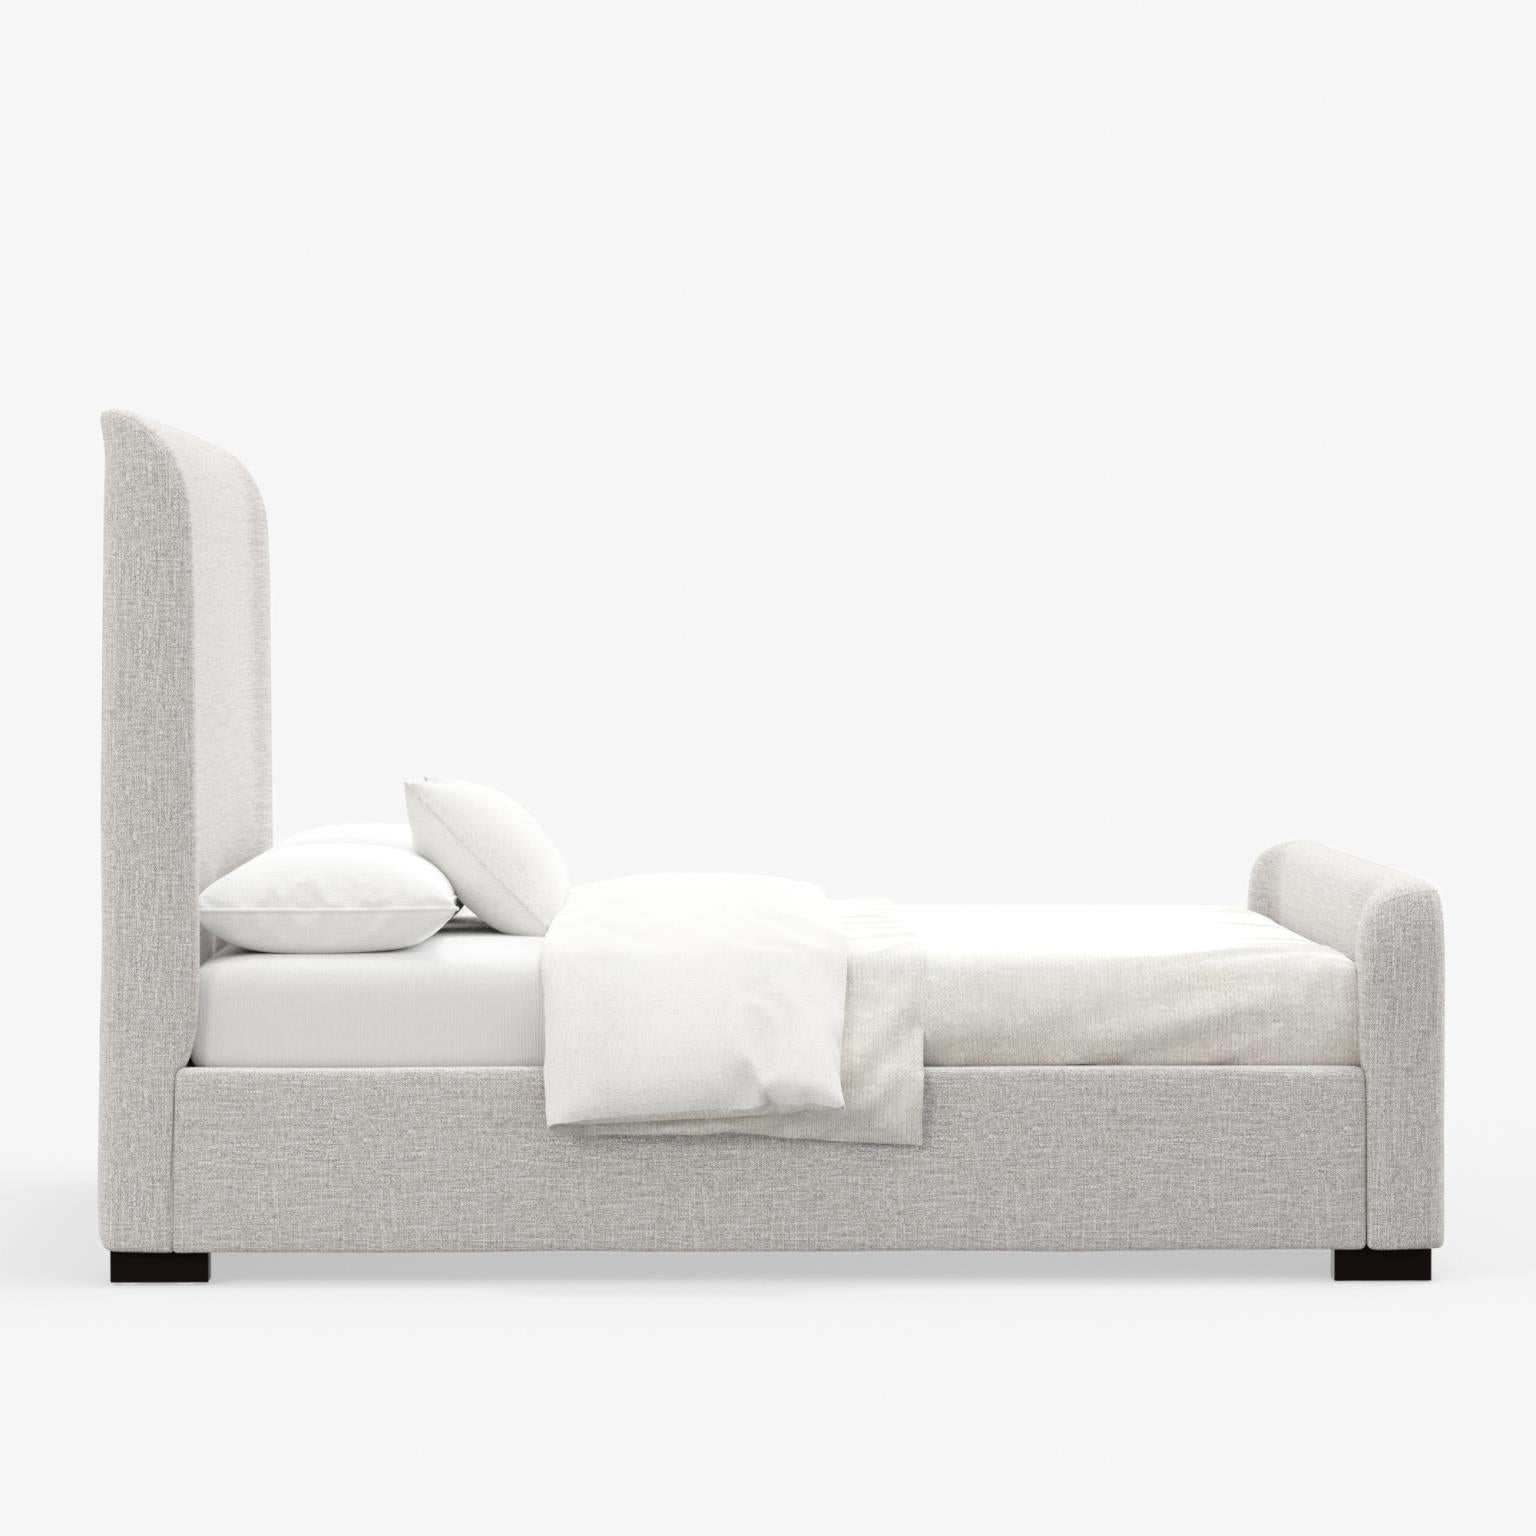 Adele Upholstered Platform Bed - Linen